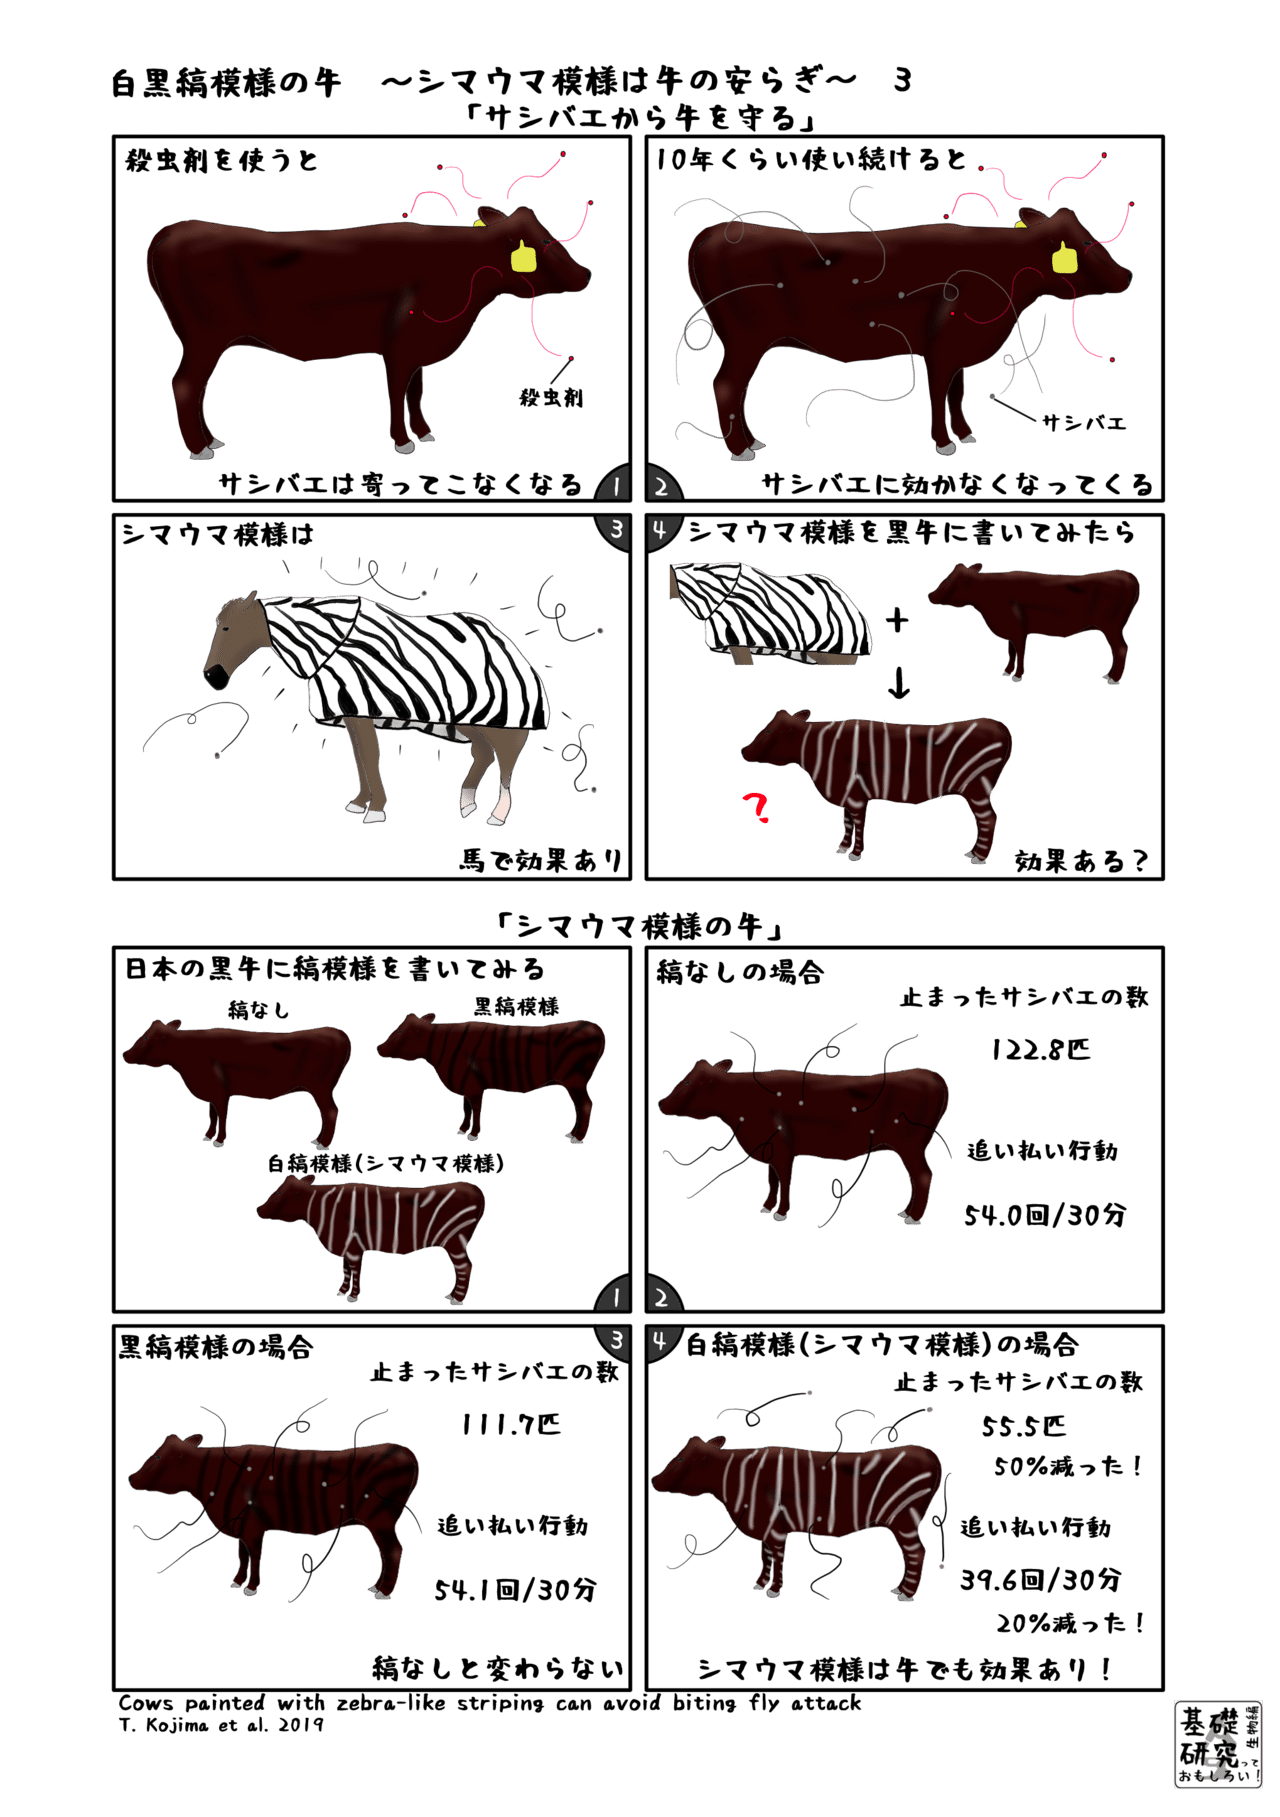 白黒縞模様の牛 シマウマ模様は牛の安らぎ 3 終 かわいせーざん 基礎研究っておもしろい 生物編 Note